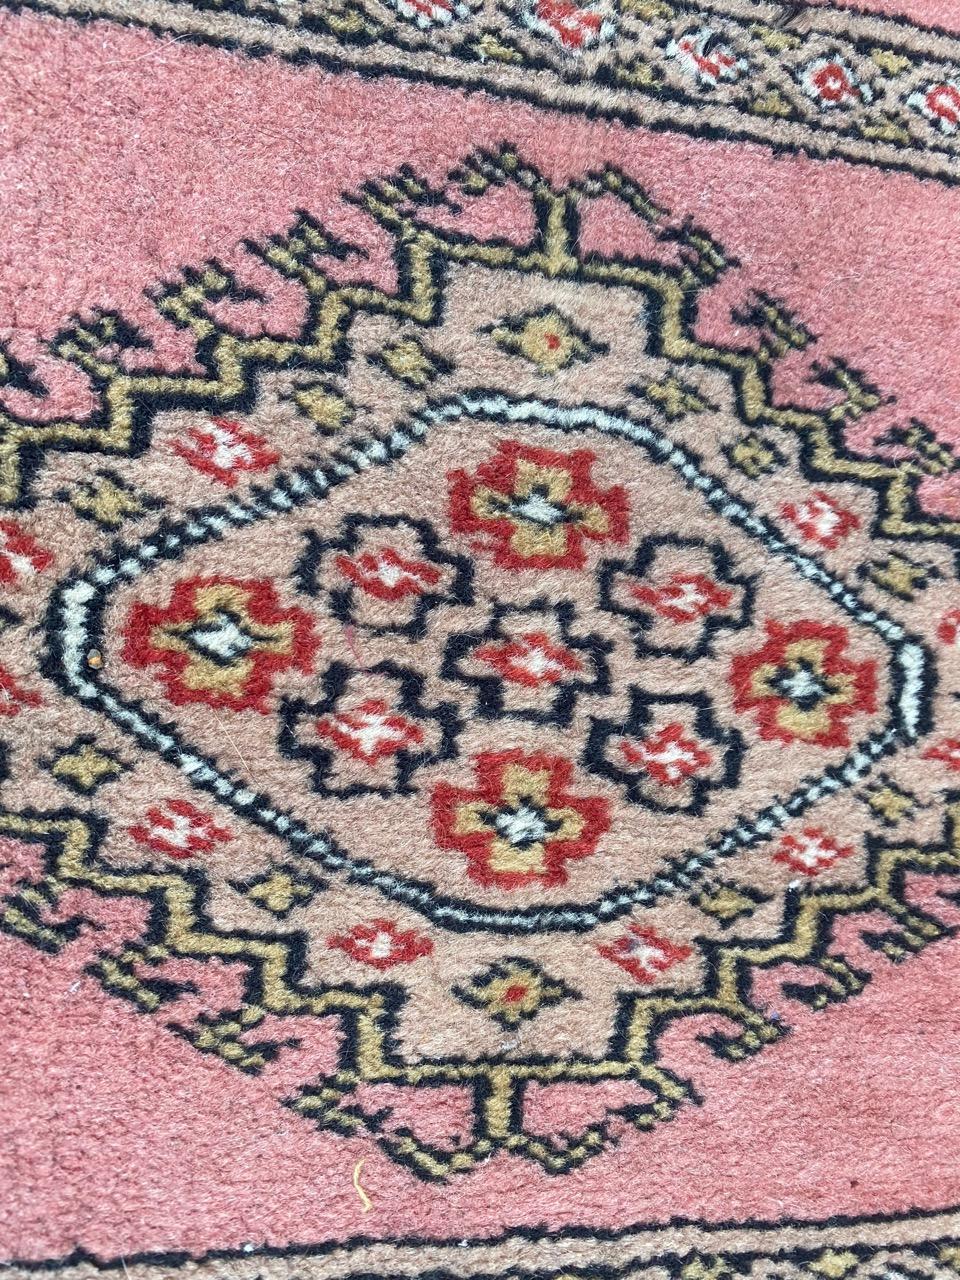 Pakistanischer Vintage-Teppich im Vintage-Stil (Handgeknüpft)